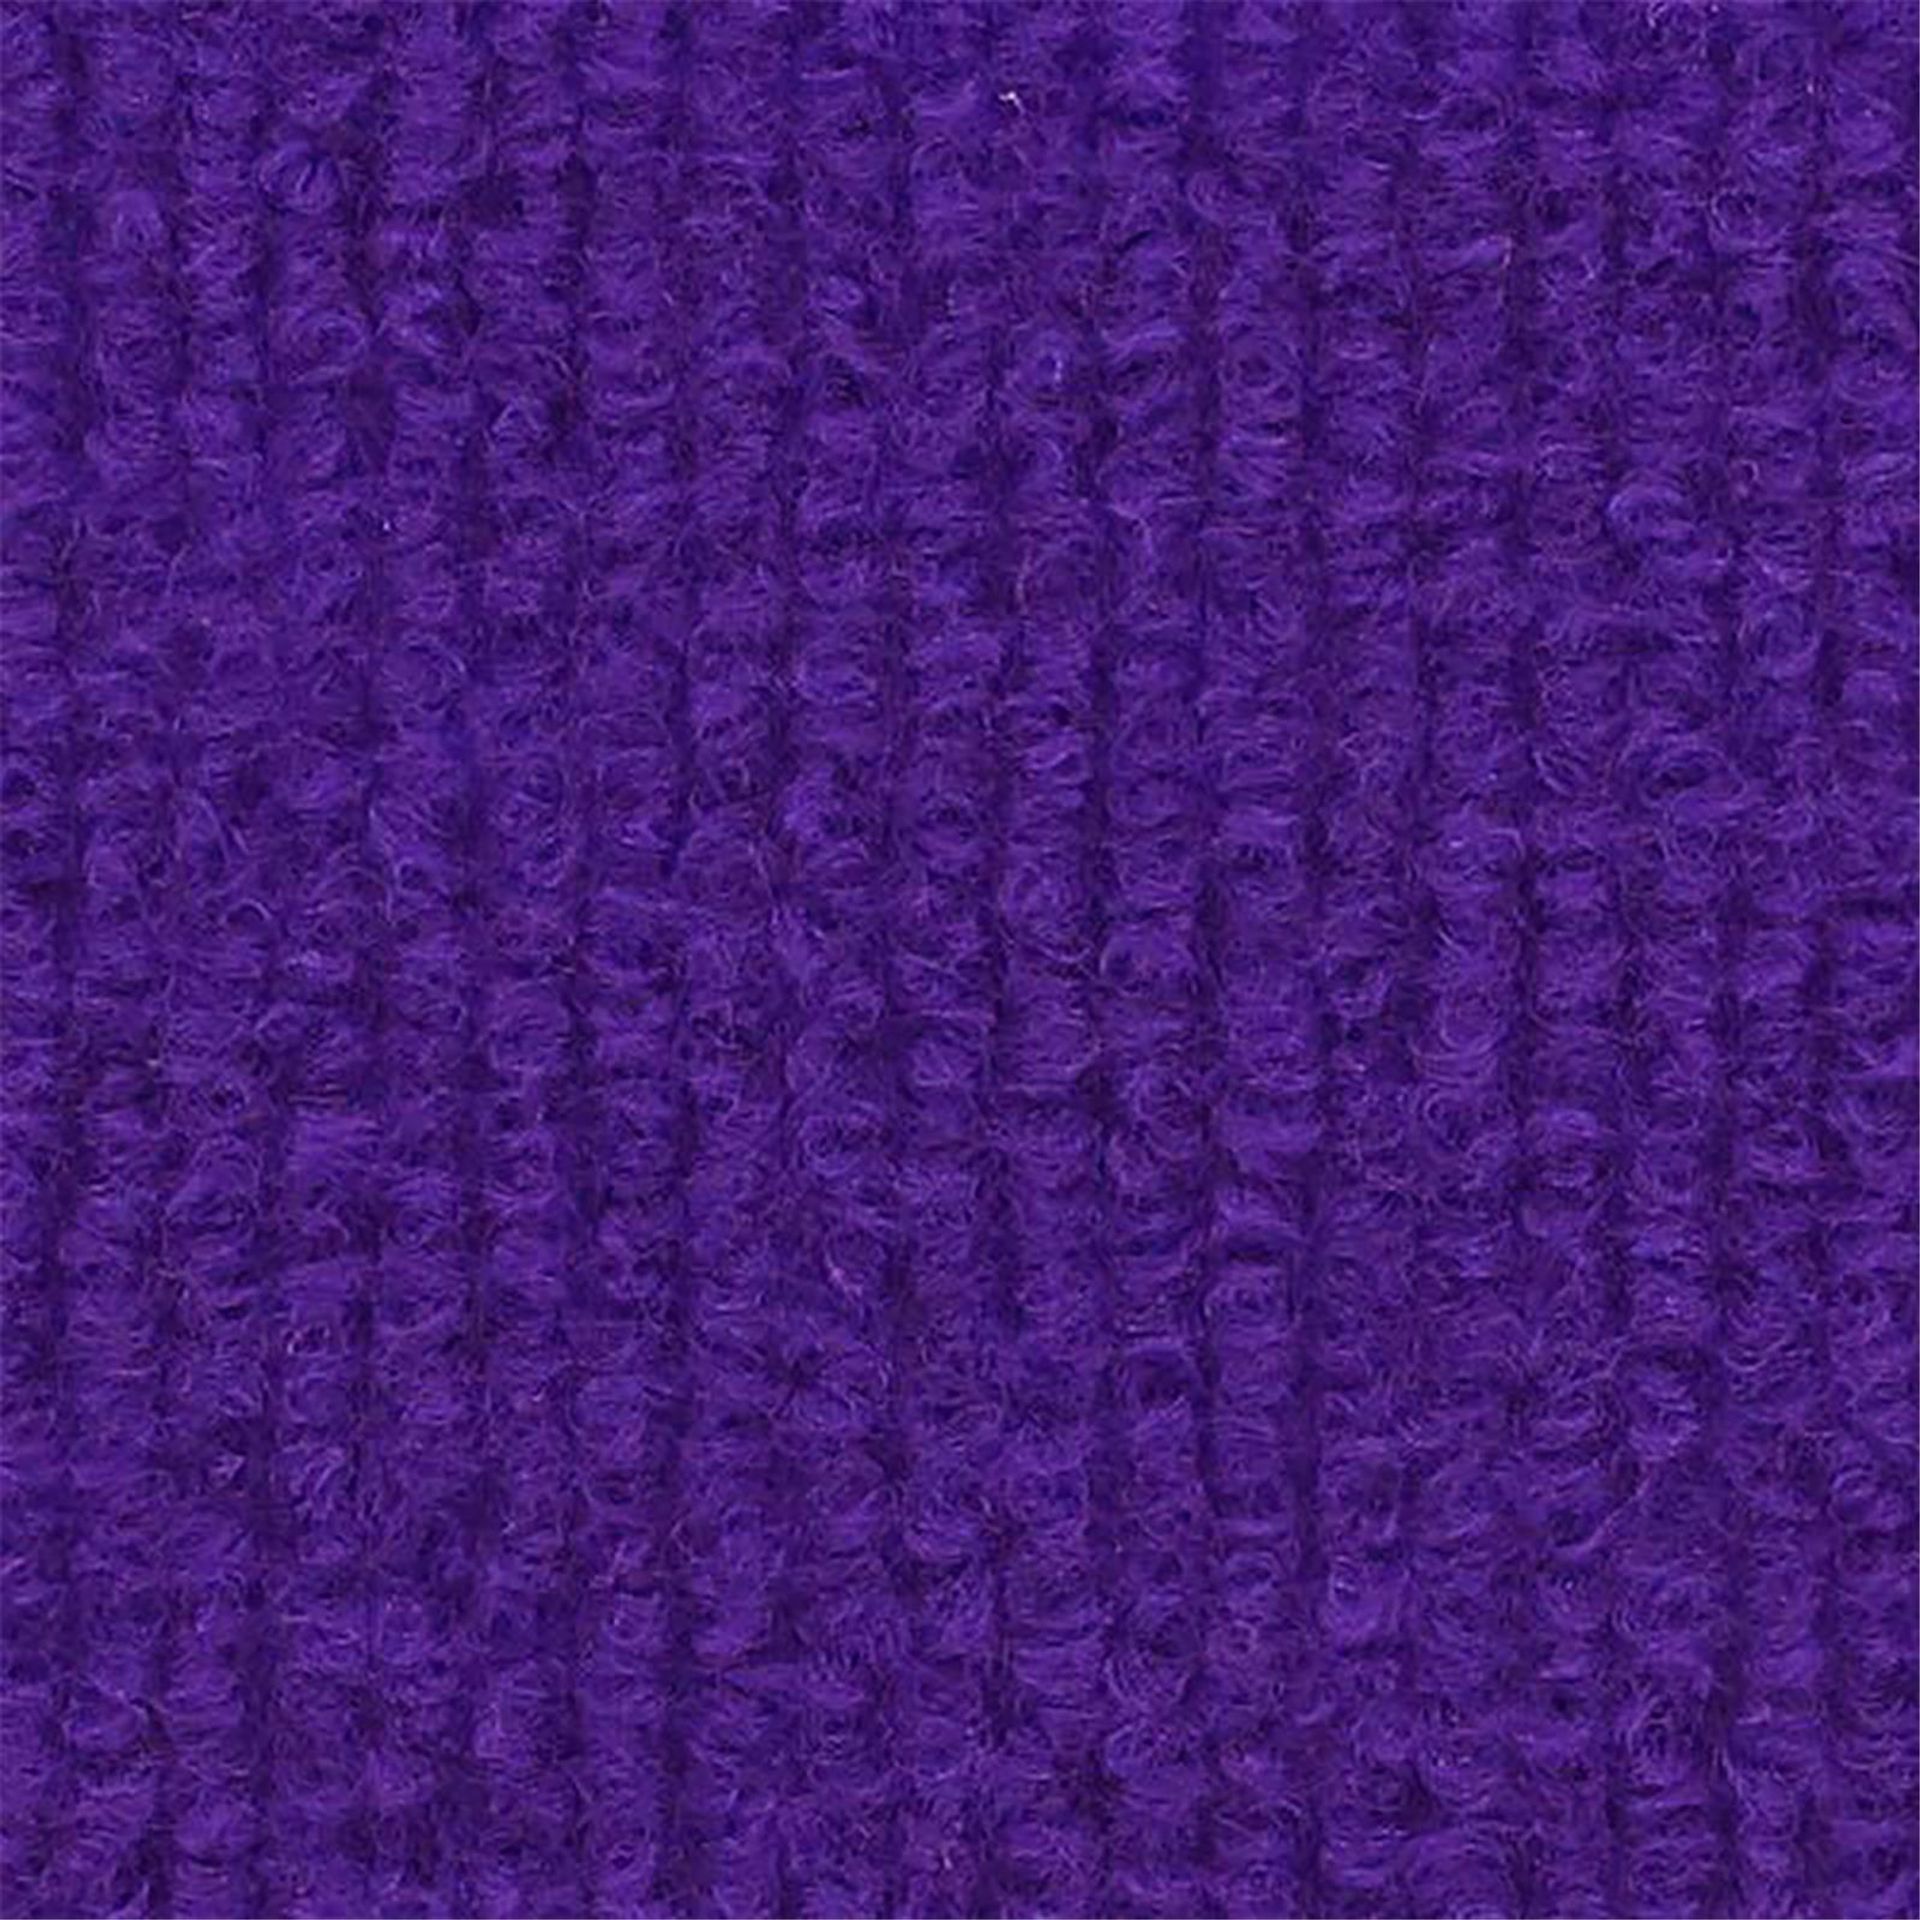 Messeboden Rips-Nadelvlies EXPOLINE Violet 0939 100qm ohne Schutzfolie - Rollenbreite 200 cm